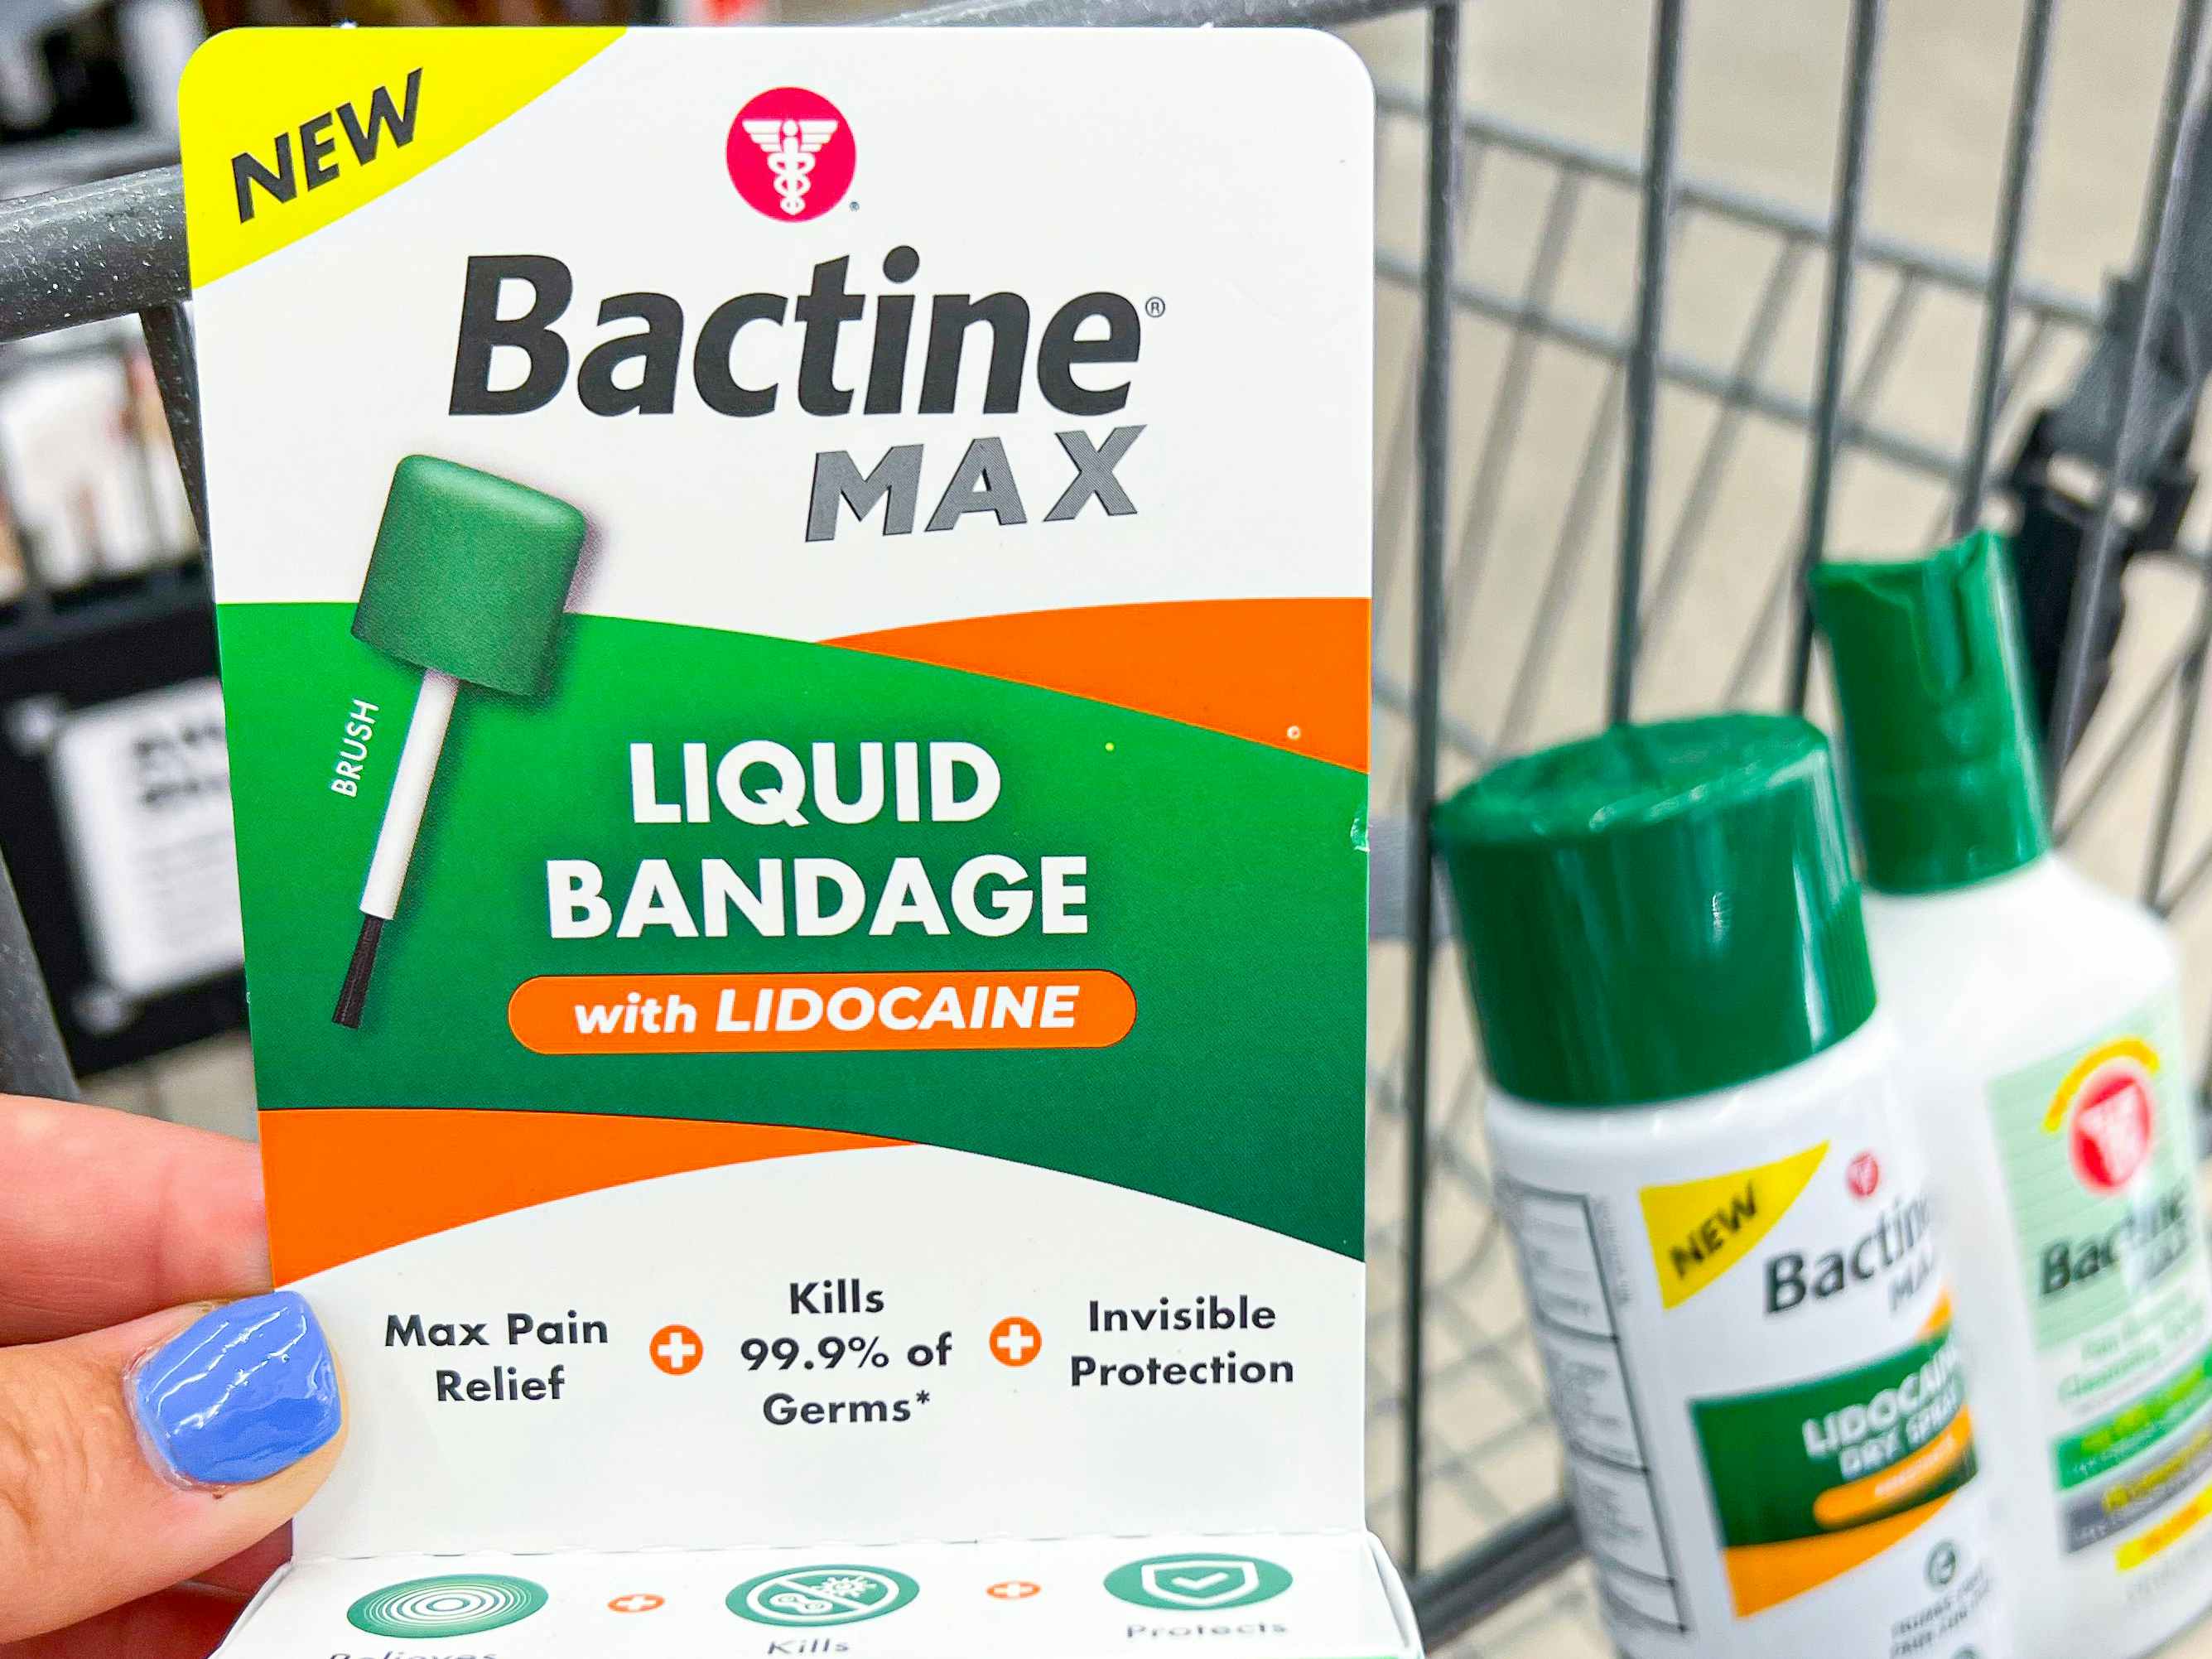 Someone holding up some Bactine Max liquid bandage with Lidocane